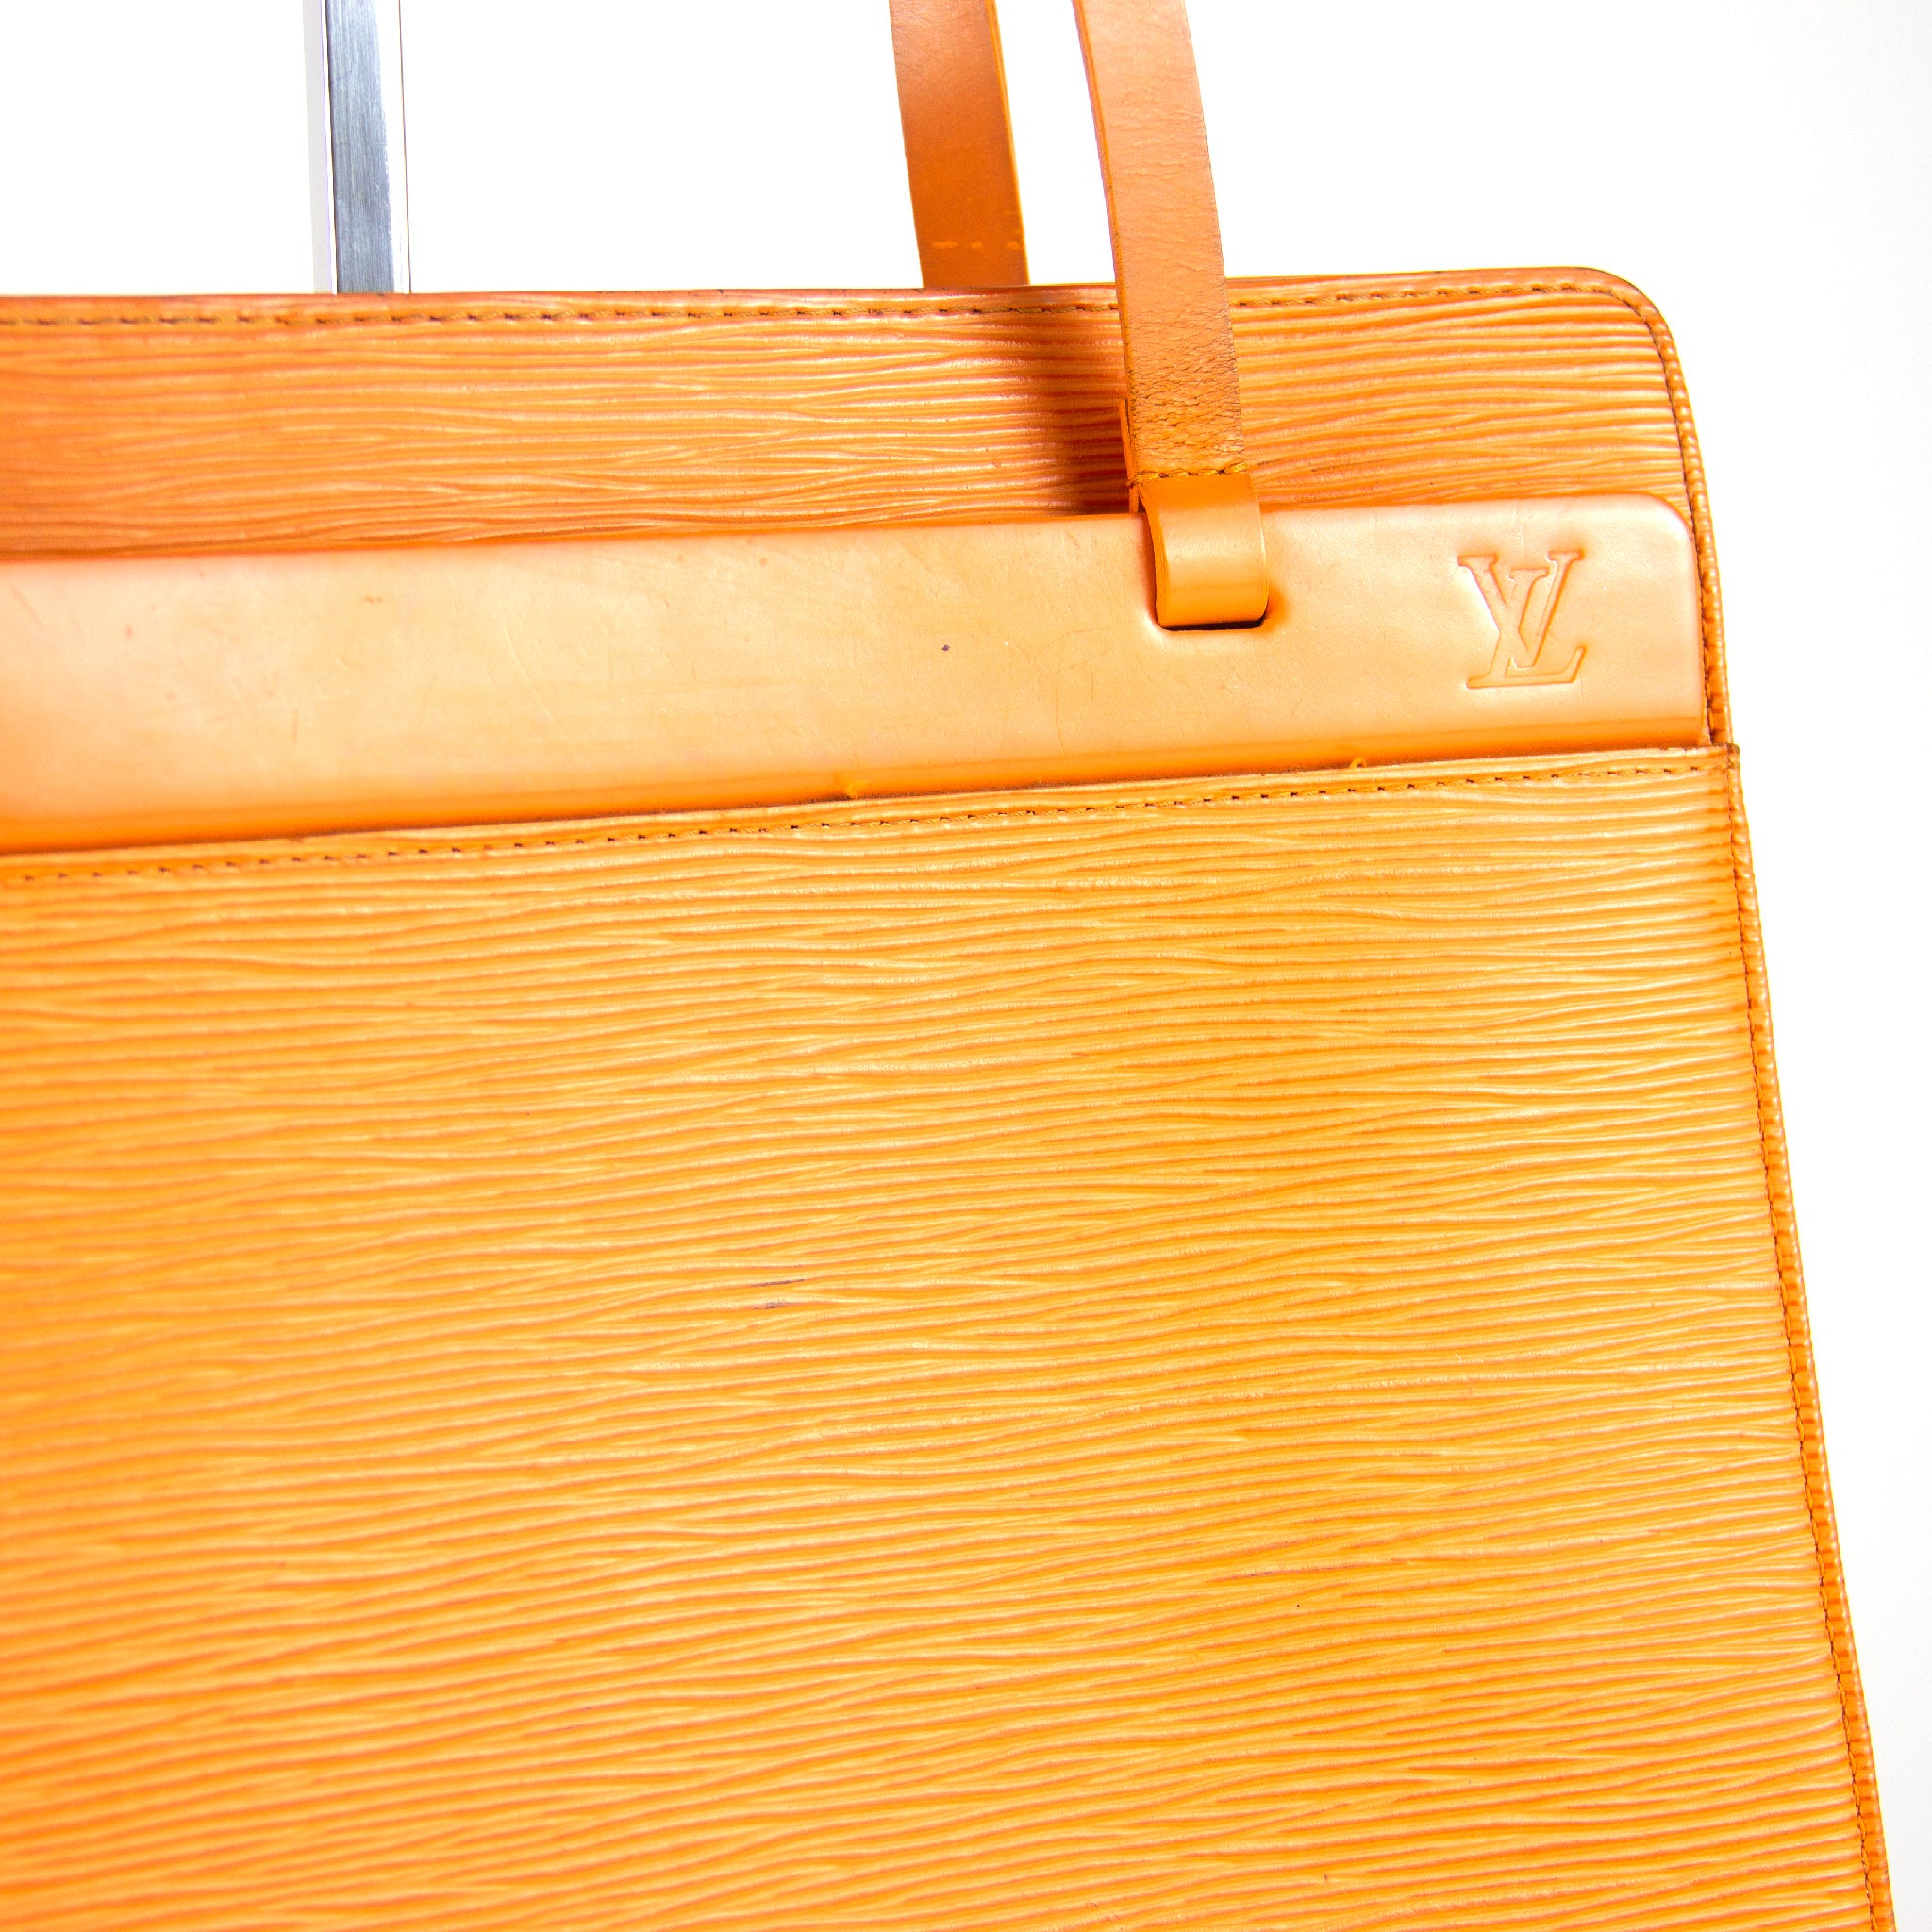 Louis Vuitton Orange Epi Leather Croisette PM Louis Vuitton